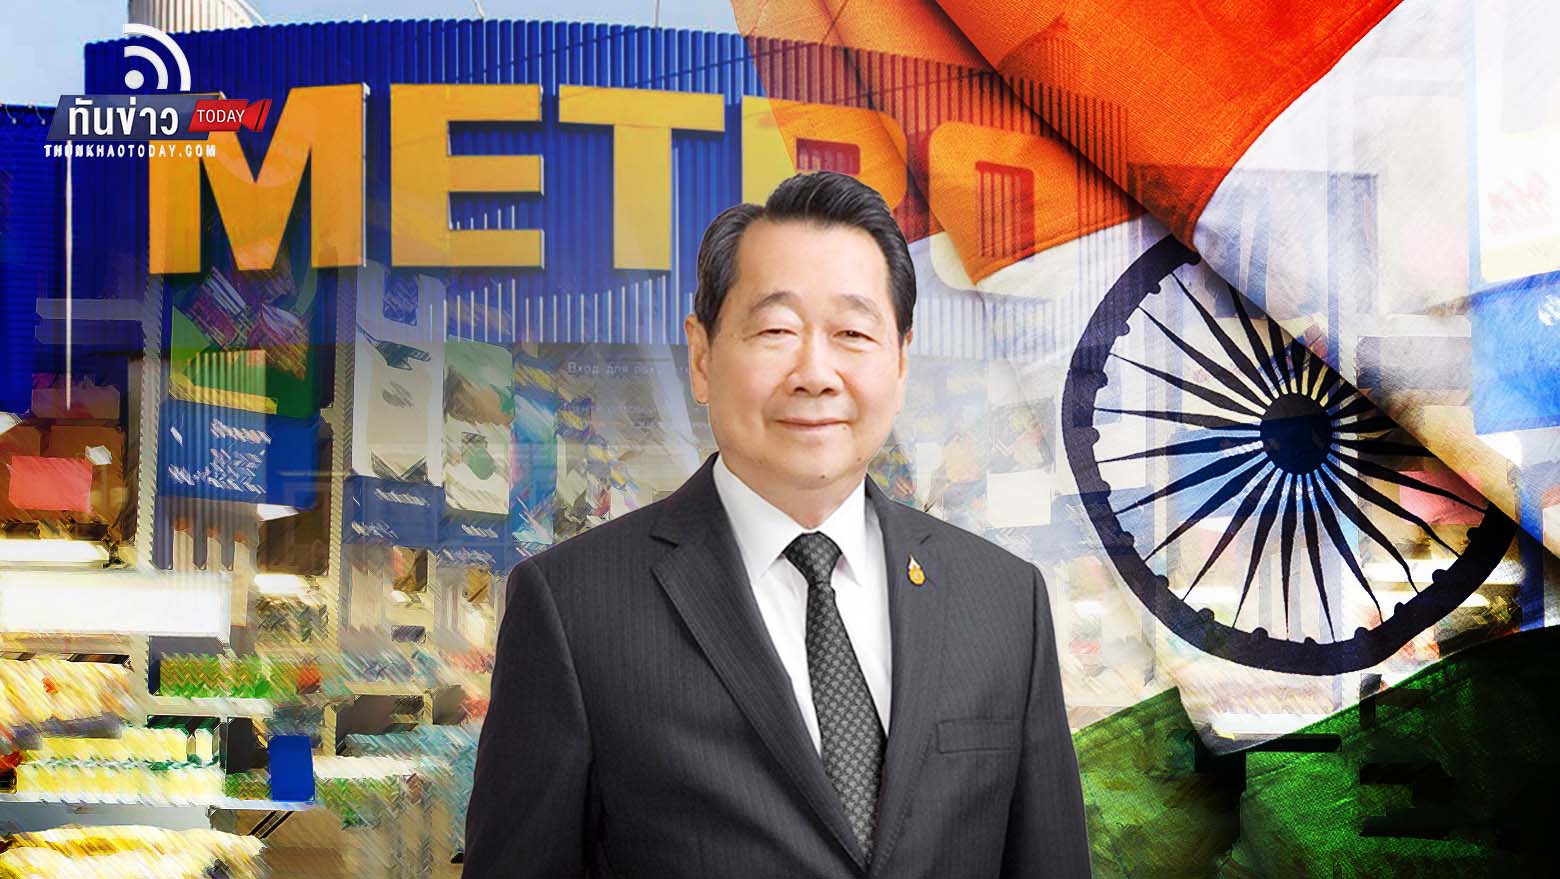 "ซีพี กรุ๊ป" เสนอซื้อ “Metro Cash & Carry-India” มูลค่า 1 พันล้านดอลลาร์